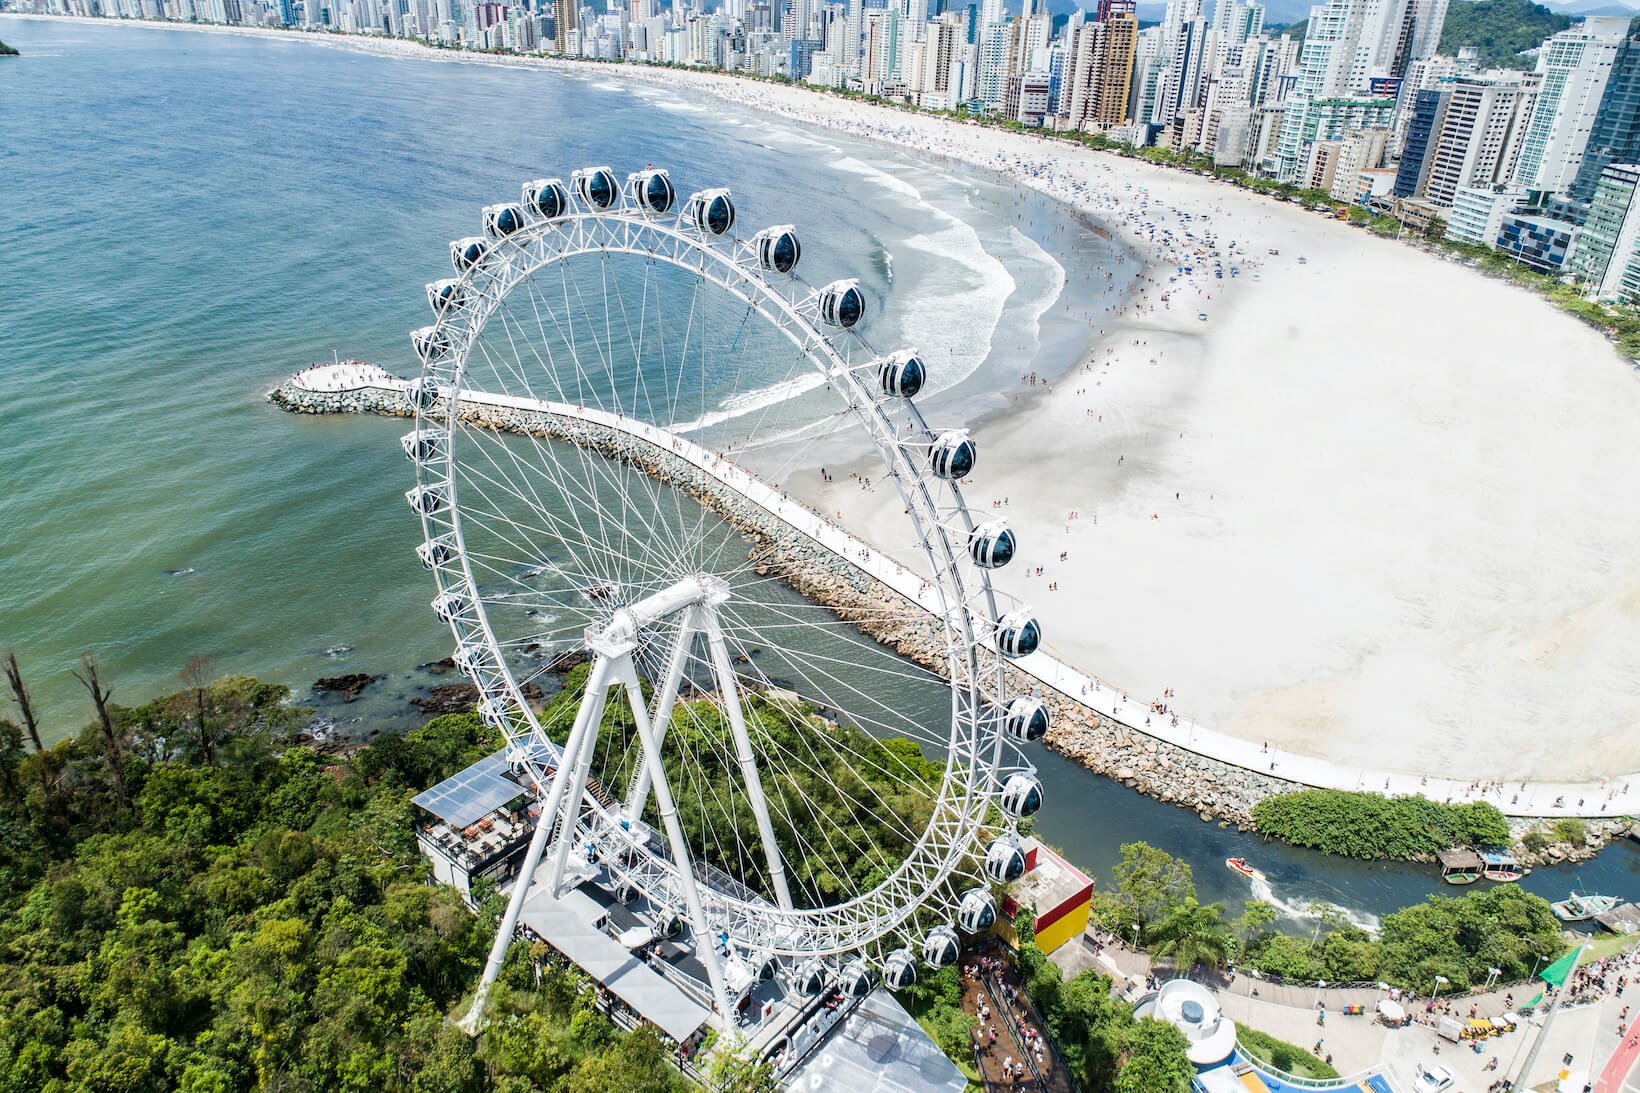 Conheça cinco destinos para viajar no verão em família | Roda gigante de Balneário Camboriú | Conexão123